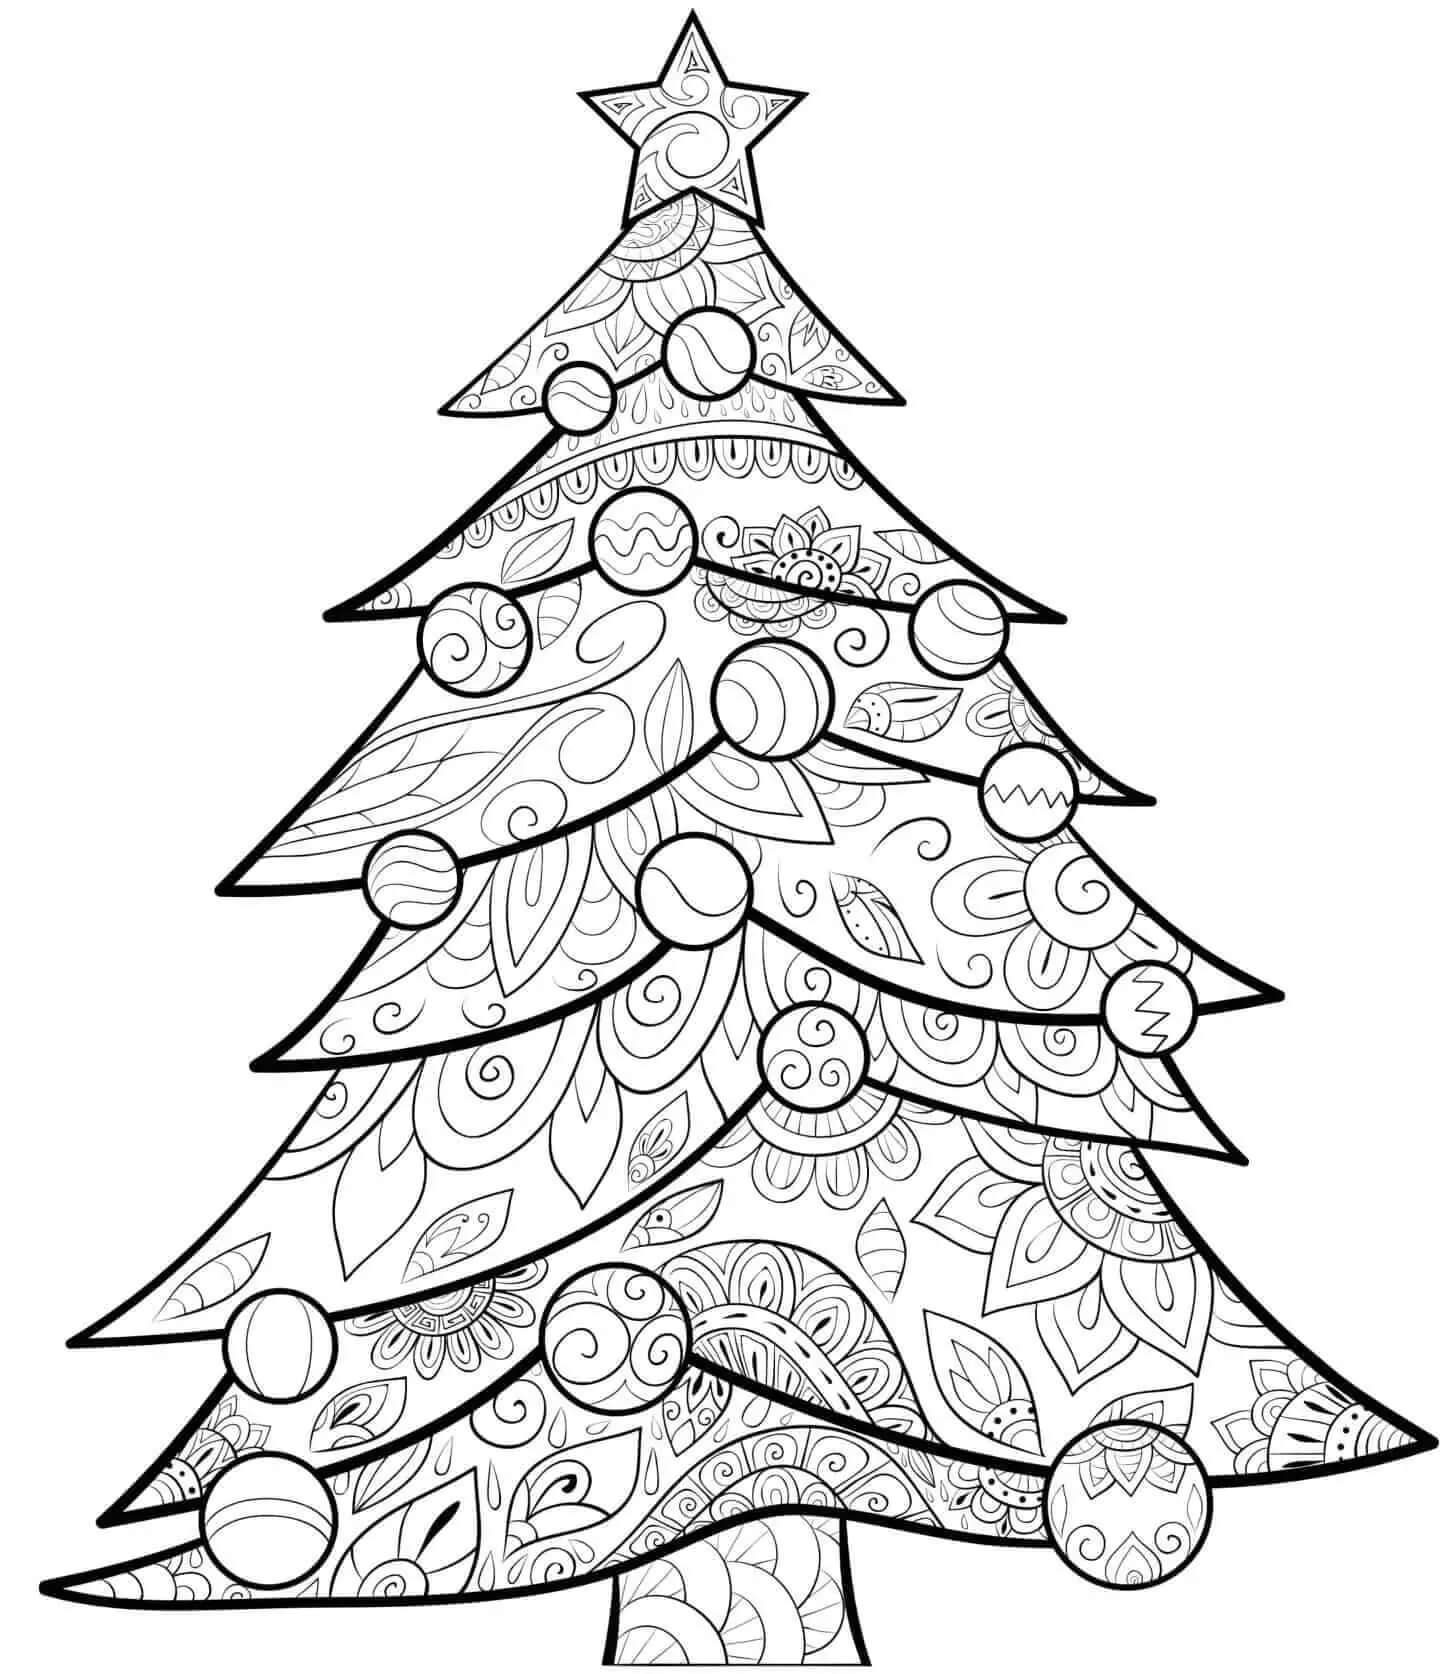 Dibujos de Árbol de Navidad es para Adultos para colorear